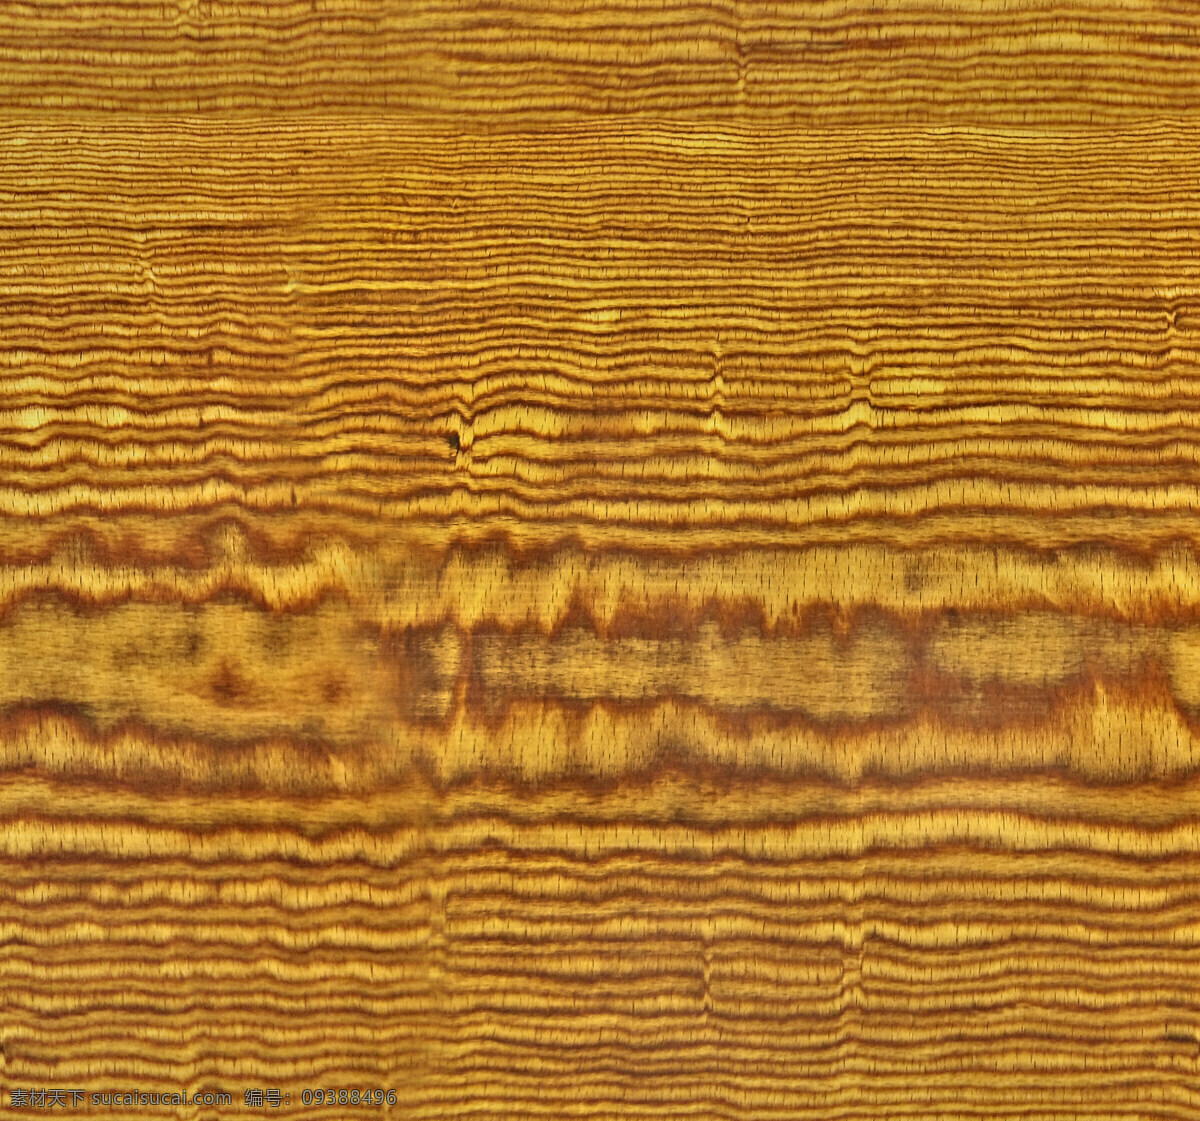 木质纹理贴图 木纹 木板 背景素材 材质贴图 堆叠木纹 高清 室内设计 木纹纹理 木质纹理 地板 木头 木板背景